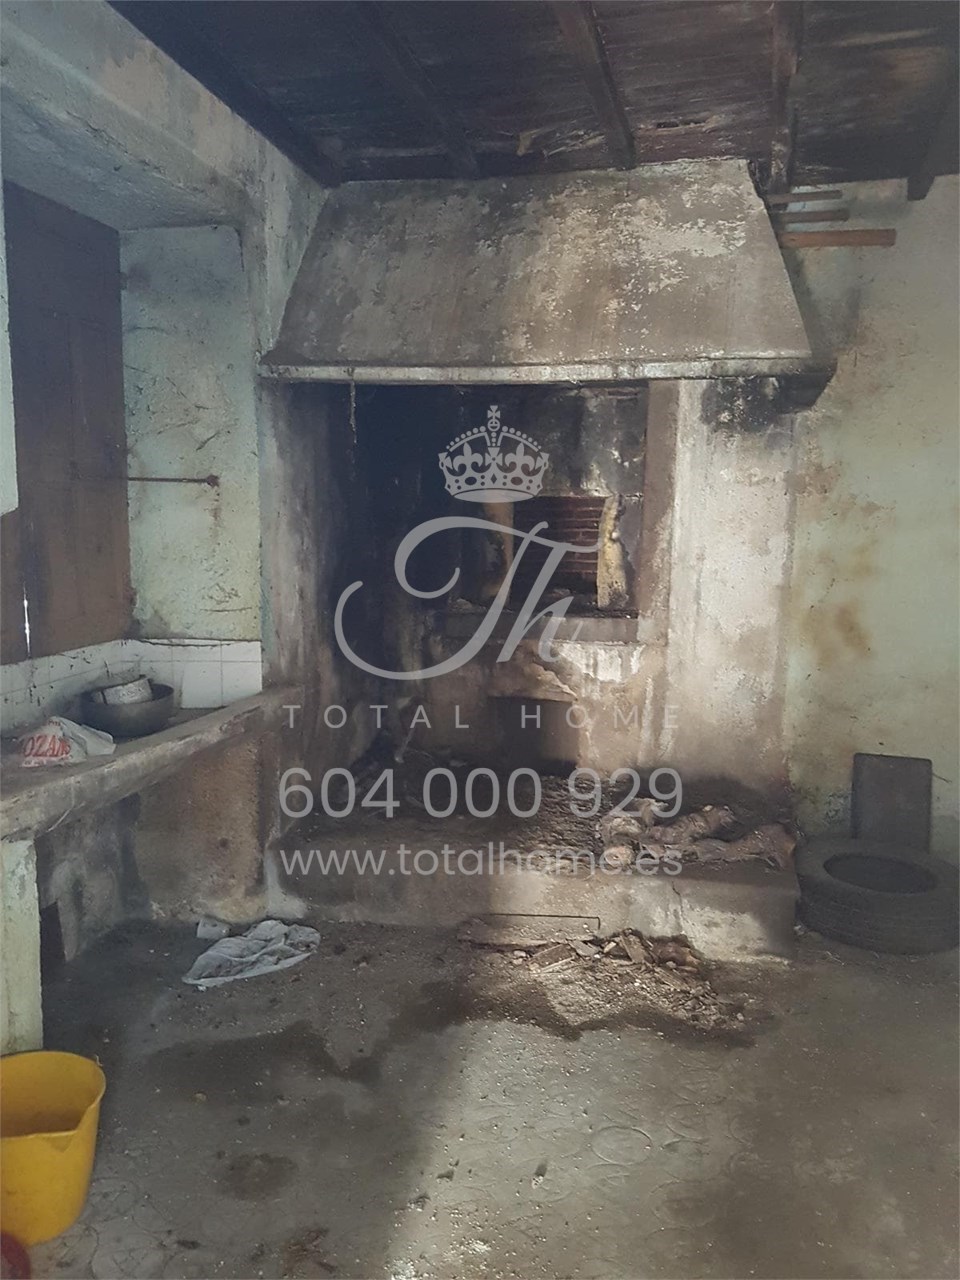 Foto 3 Total Home vende casa de piedra para restaurar